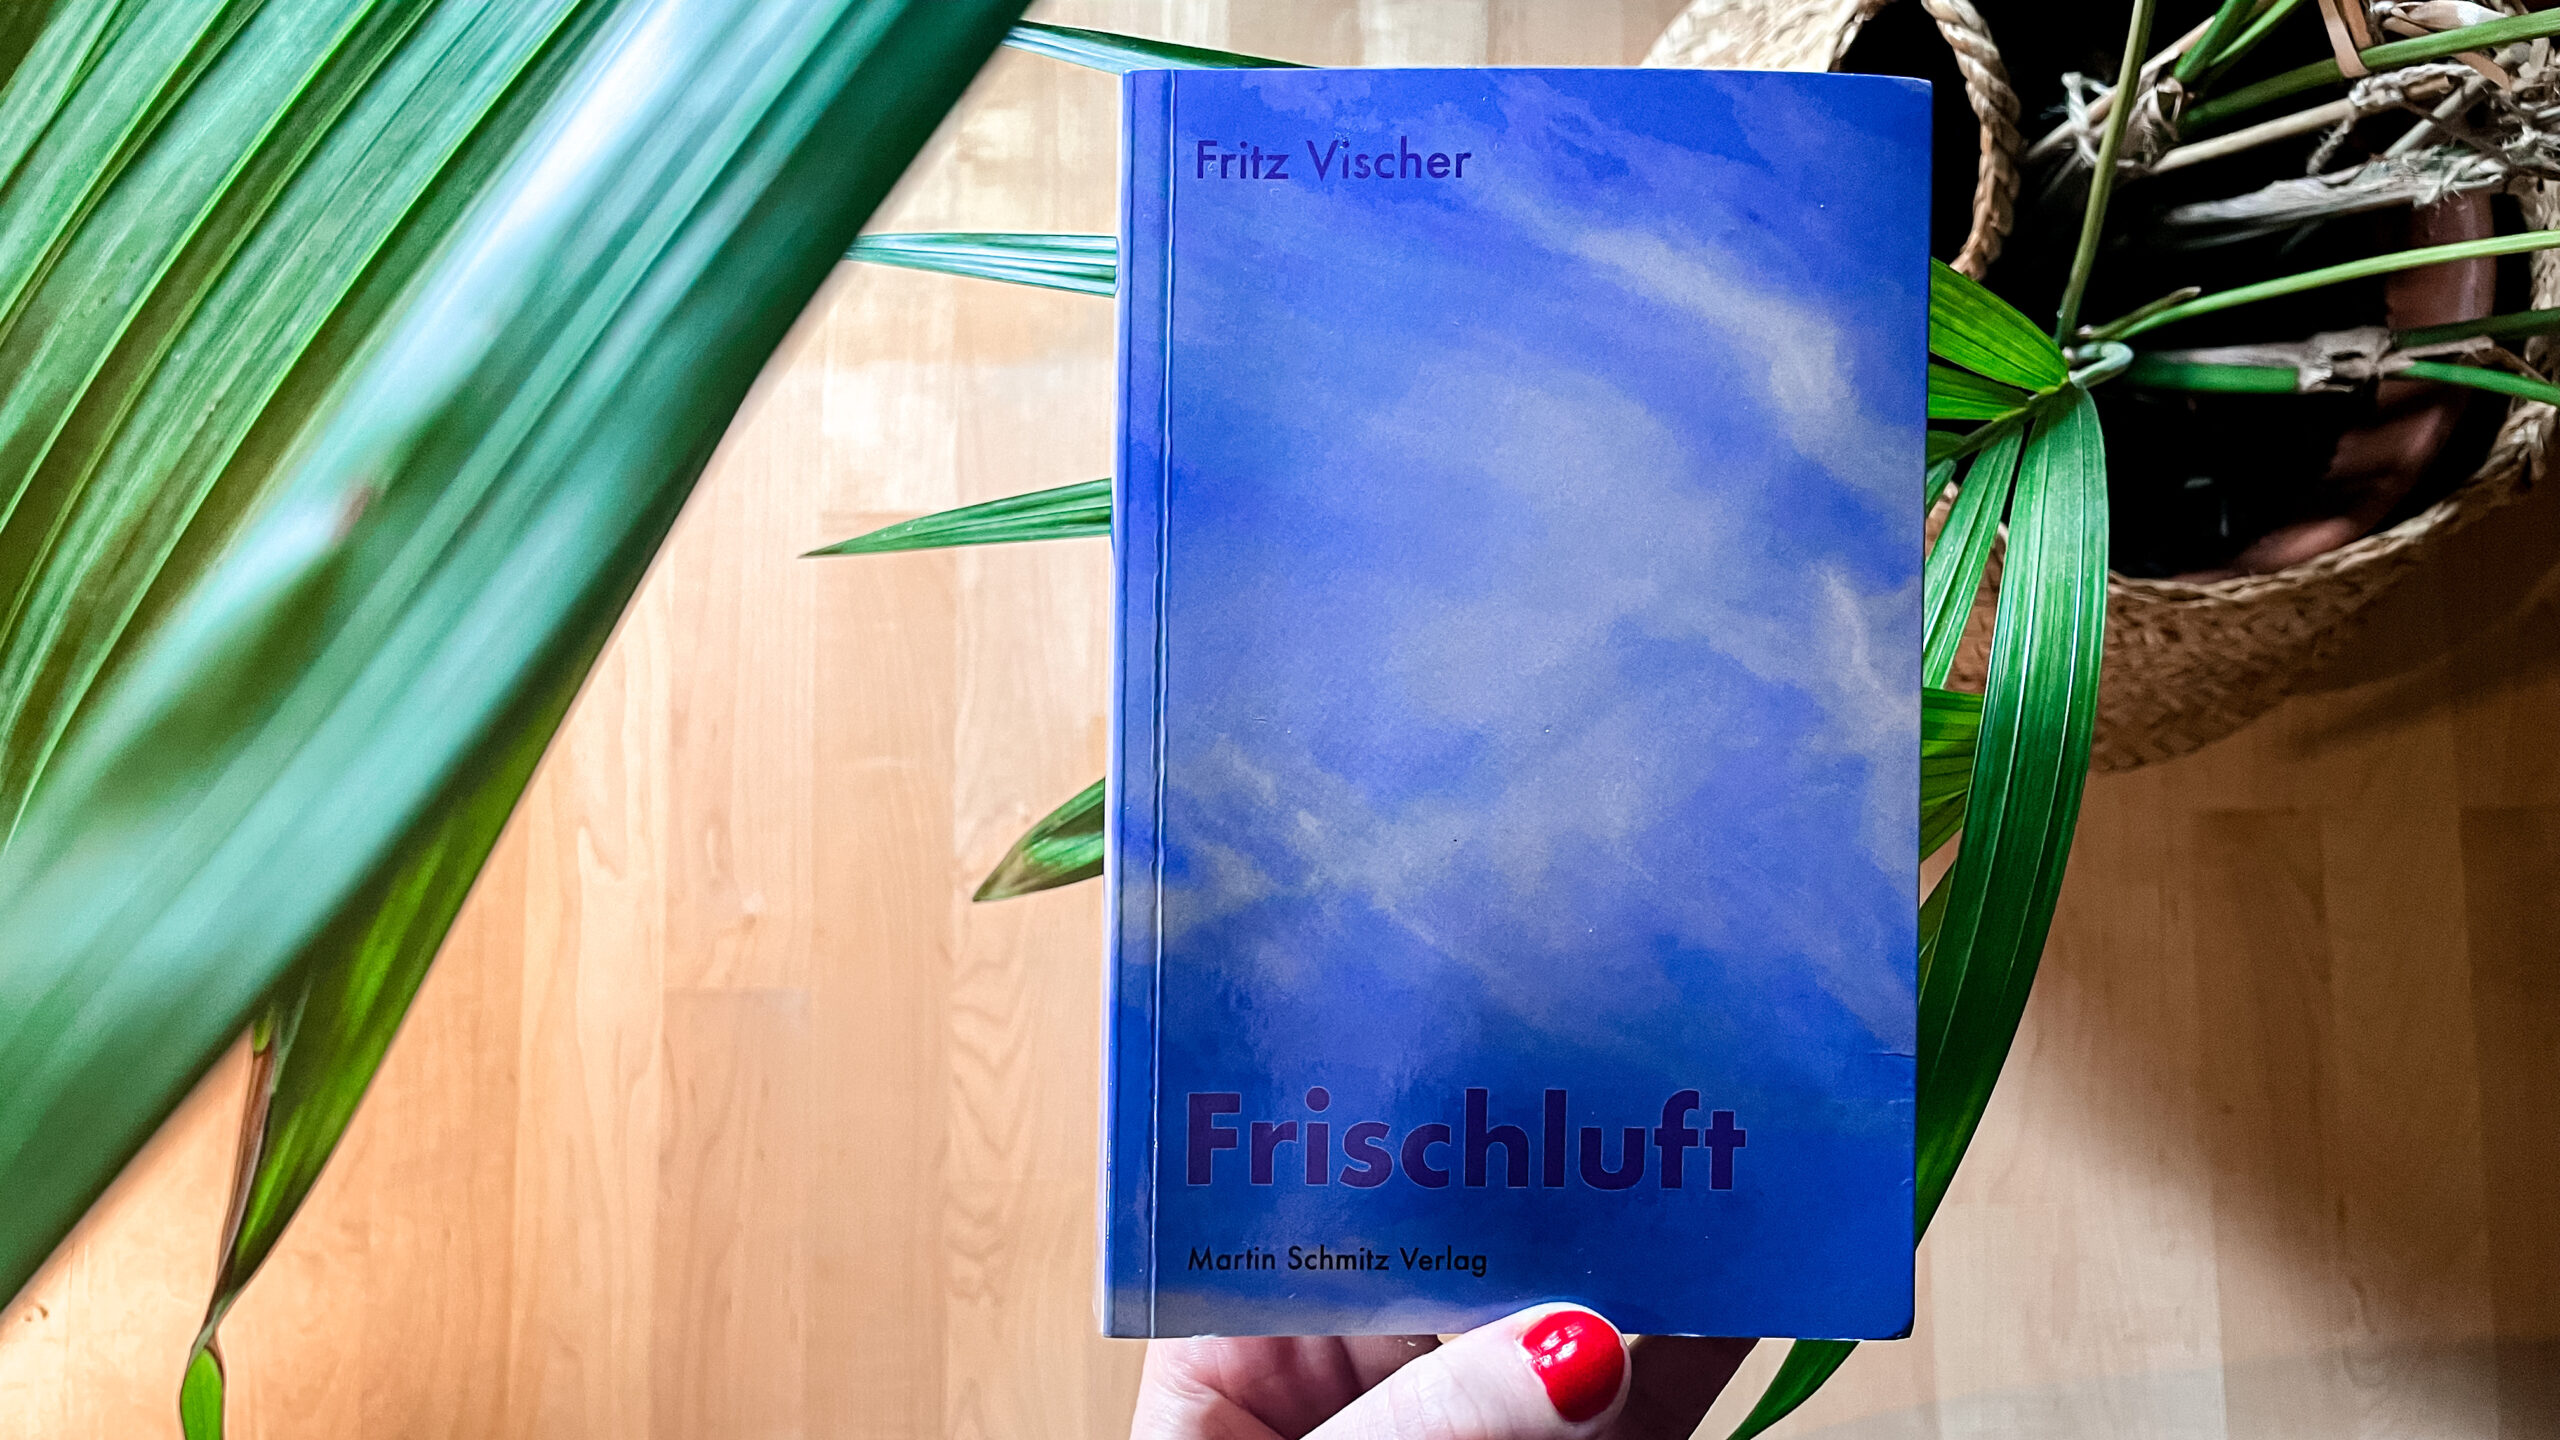 Fritz Vischer: Frischluft